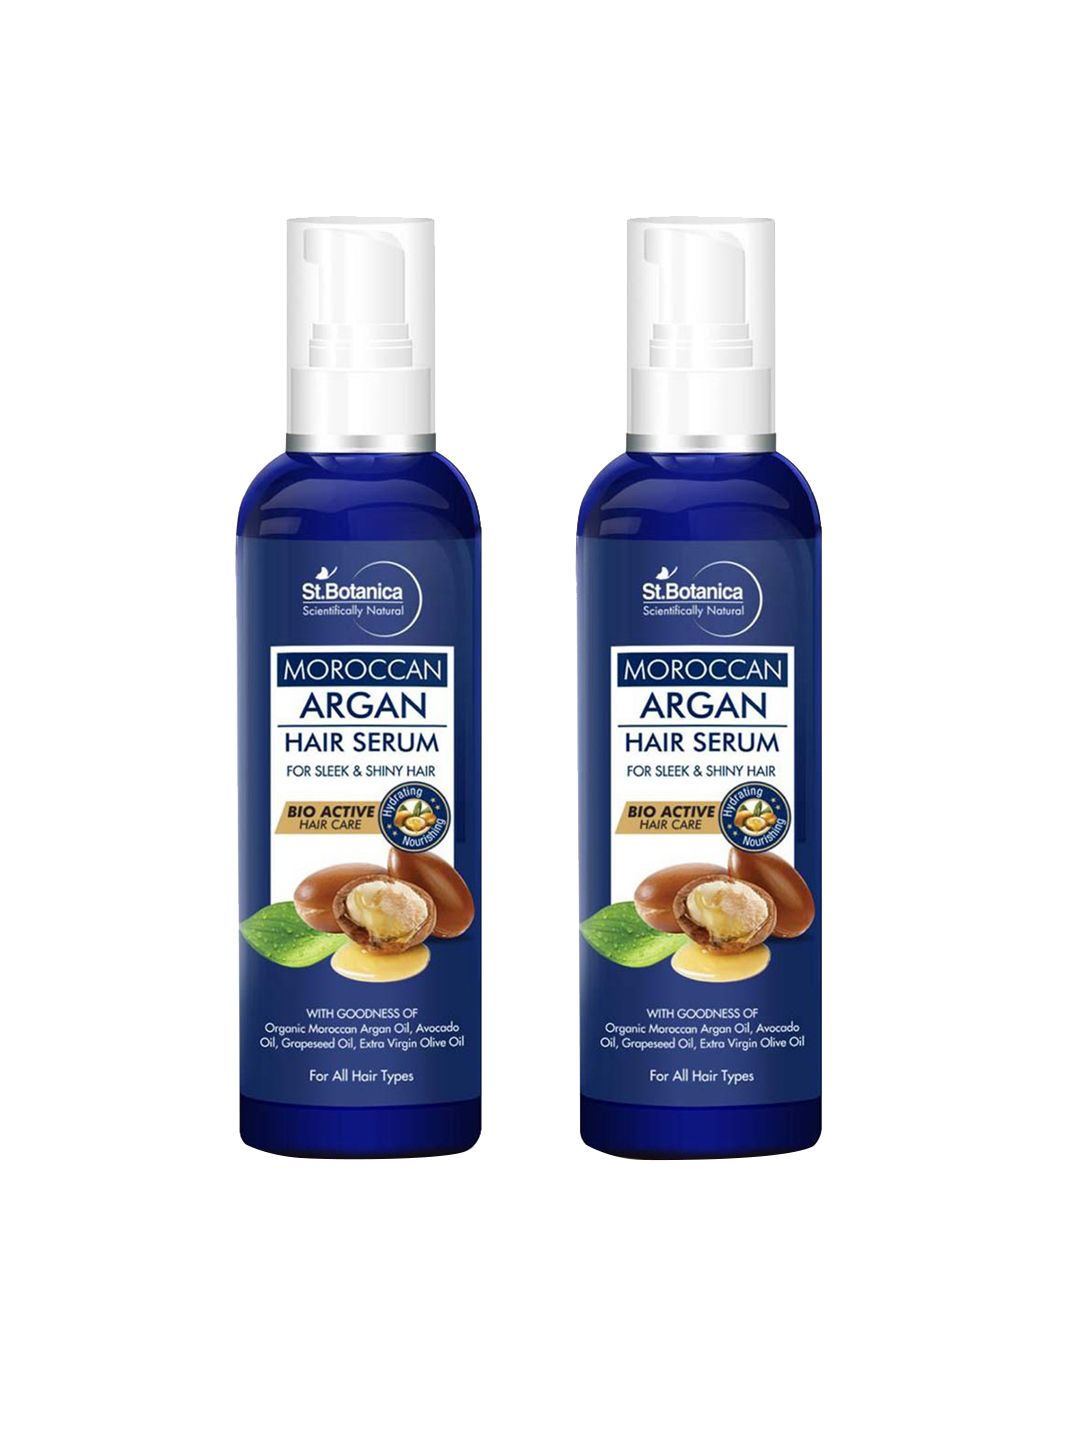 StBotanica Set Of 2 Moroccan Argan Hair Serum 240ml Price in India